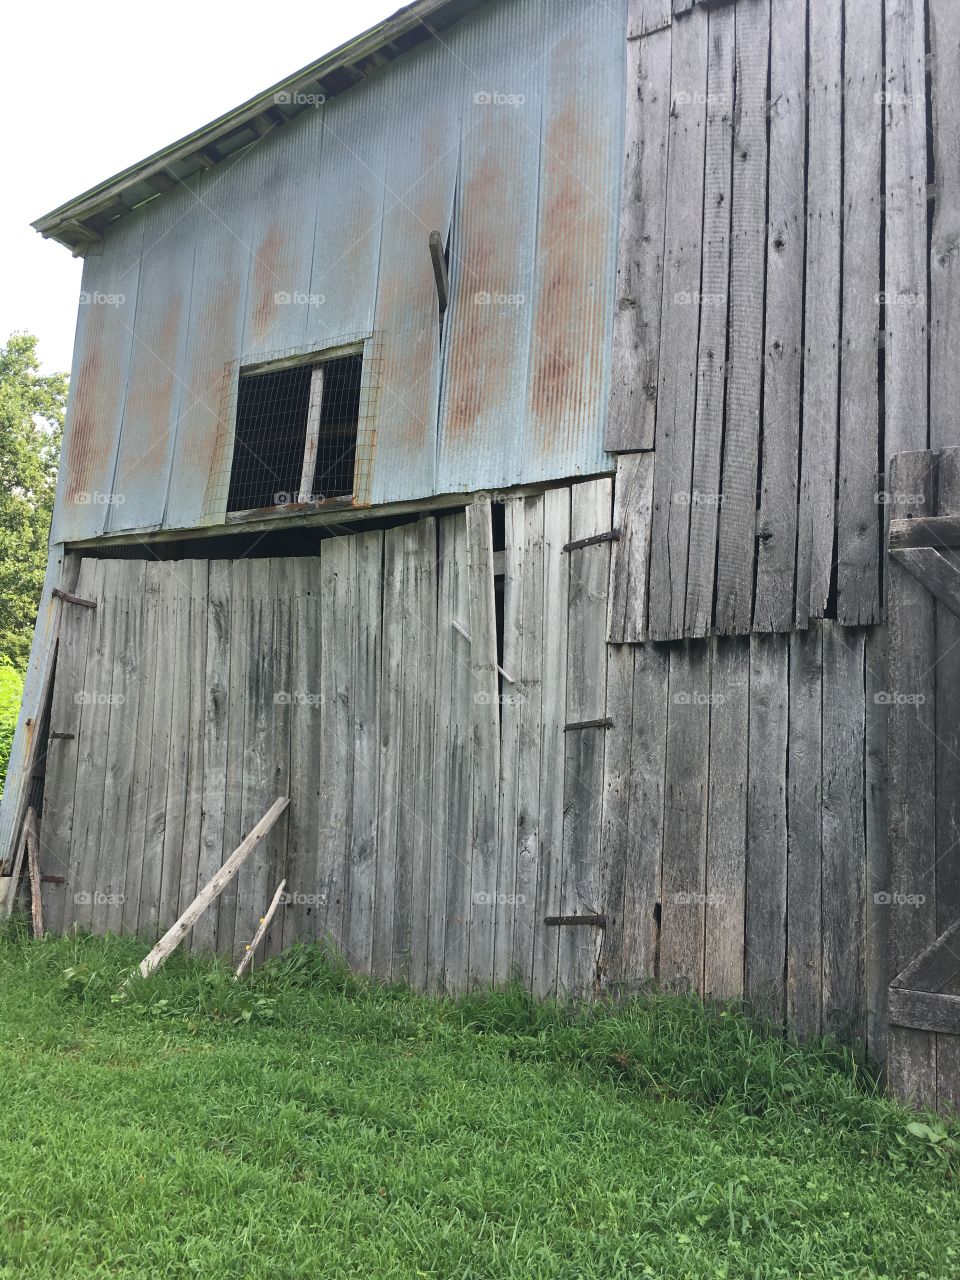 Tobacco barn old back door